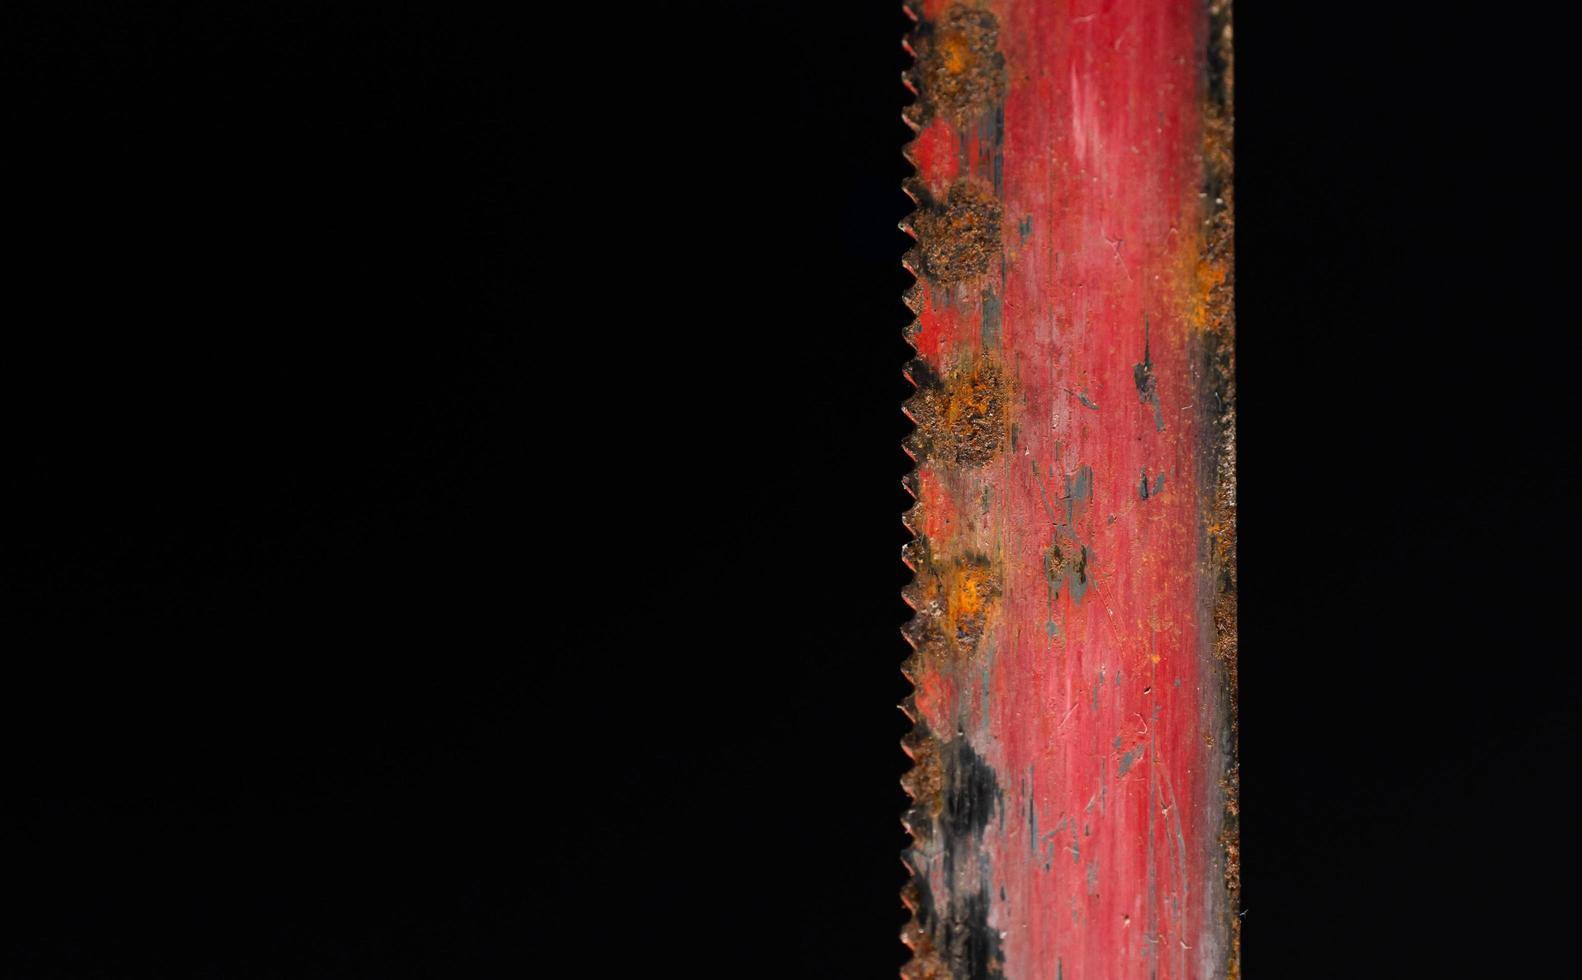 lâmina de serra vermelha velha desgastada com ferrugem na superfície e arranhões. foto macro em fundo preto.